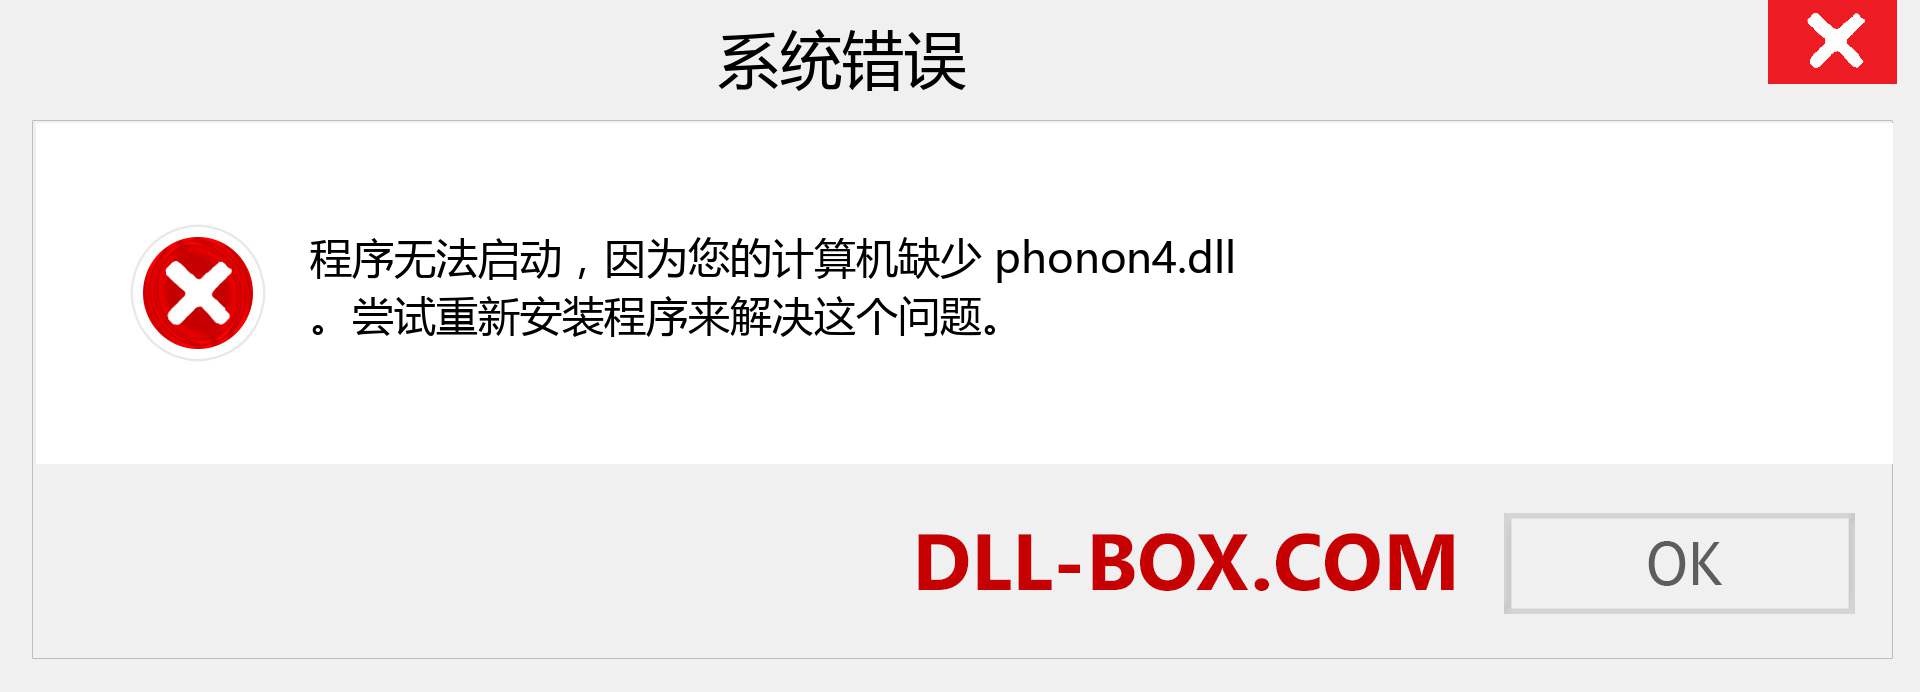 phonon4.dll 文件丢失？。 适用于 Windows 7、8、10 的下载 - 修复 Windows、照片、图像上的 phonon4 dll 丢失错误